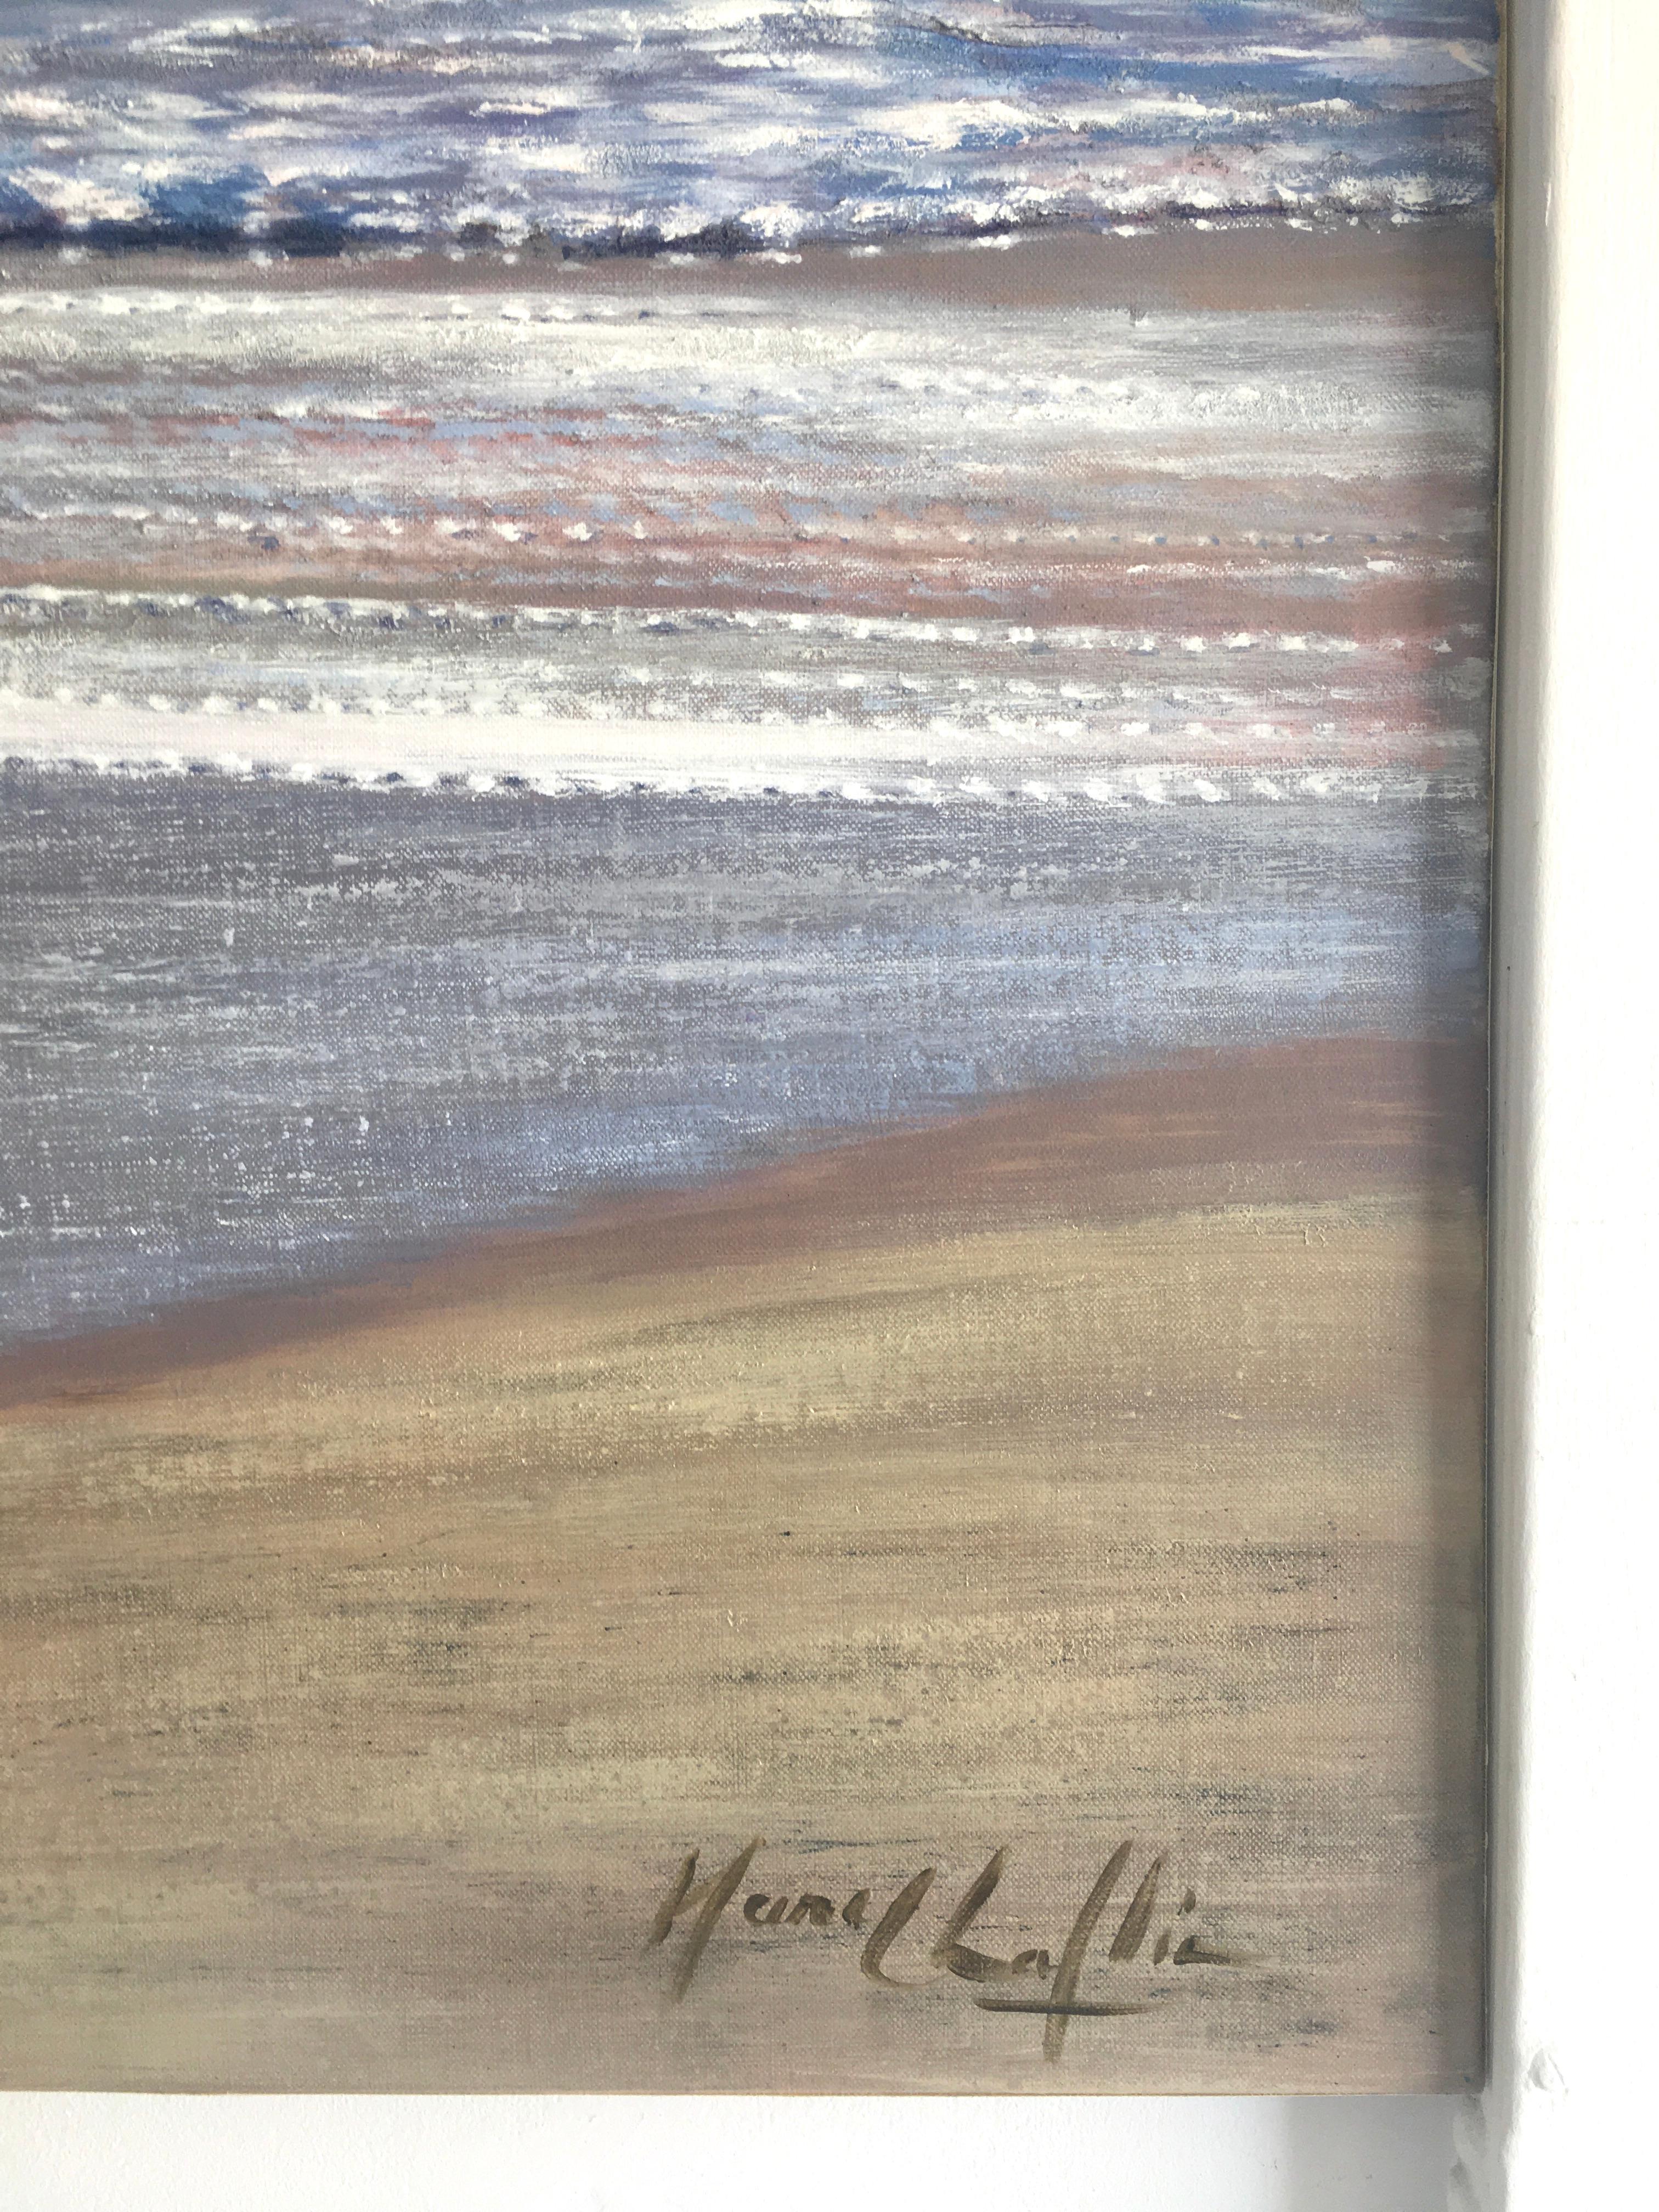 Blues-original réalisme moderne peinture de paysage marin-océan-œuvre d'art-art contemporain - Impressionnisme abstrait Painting par Mary Chaplin